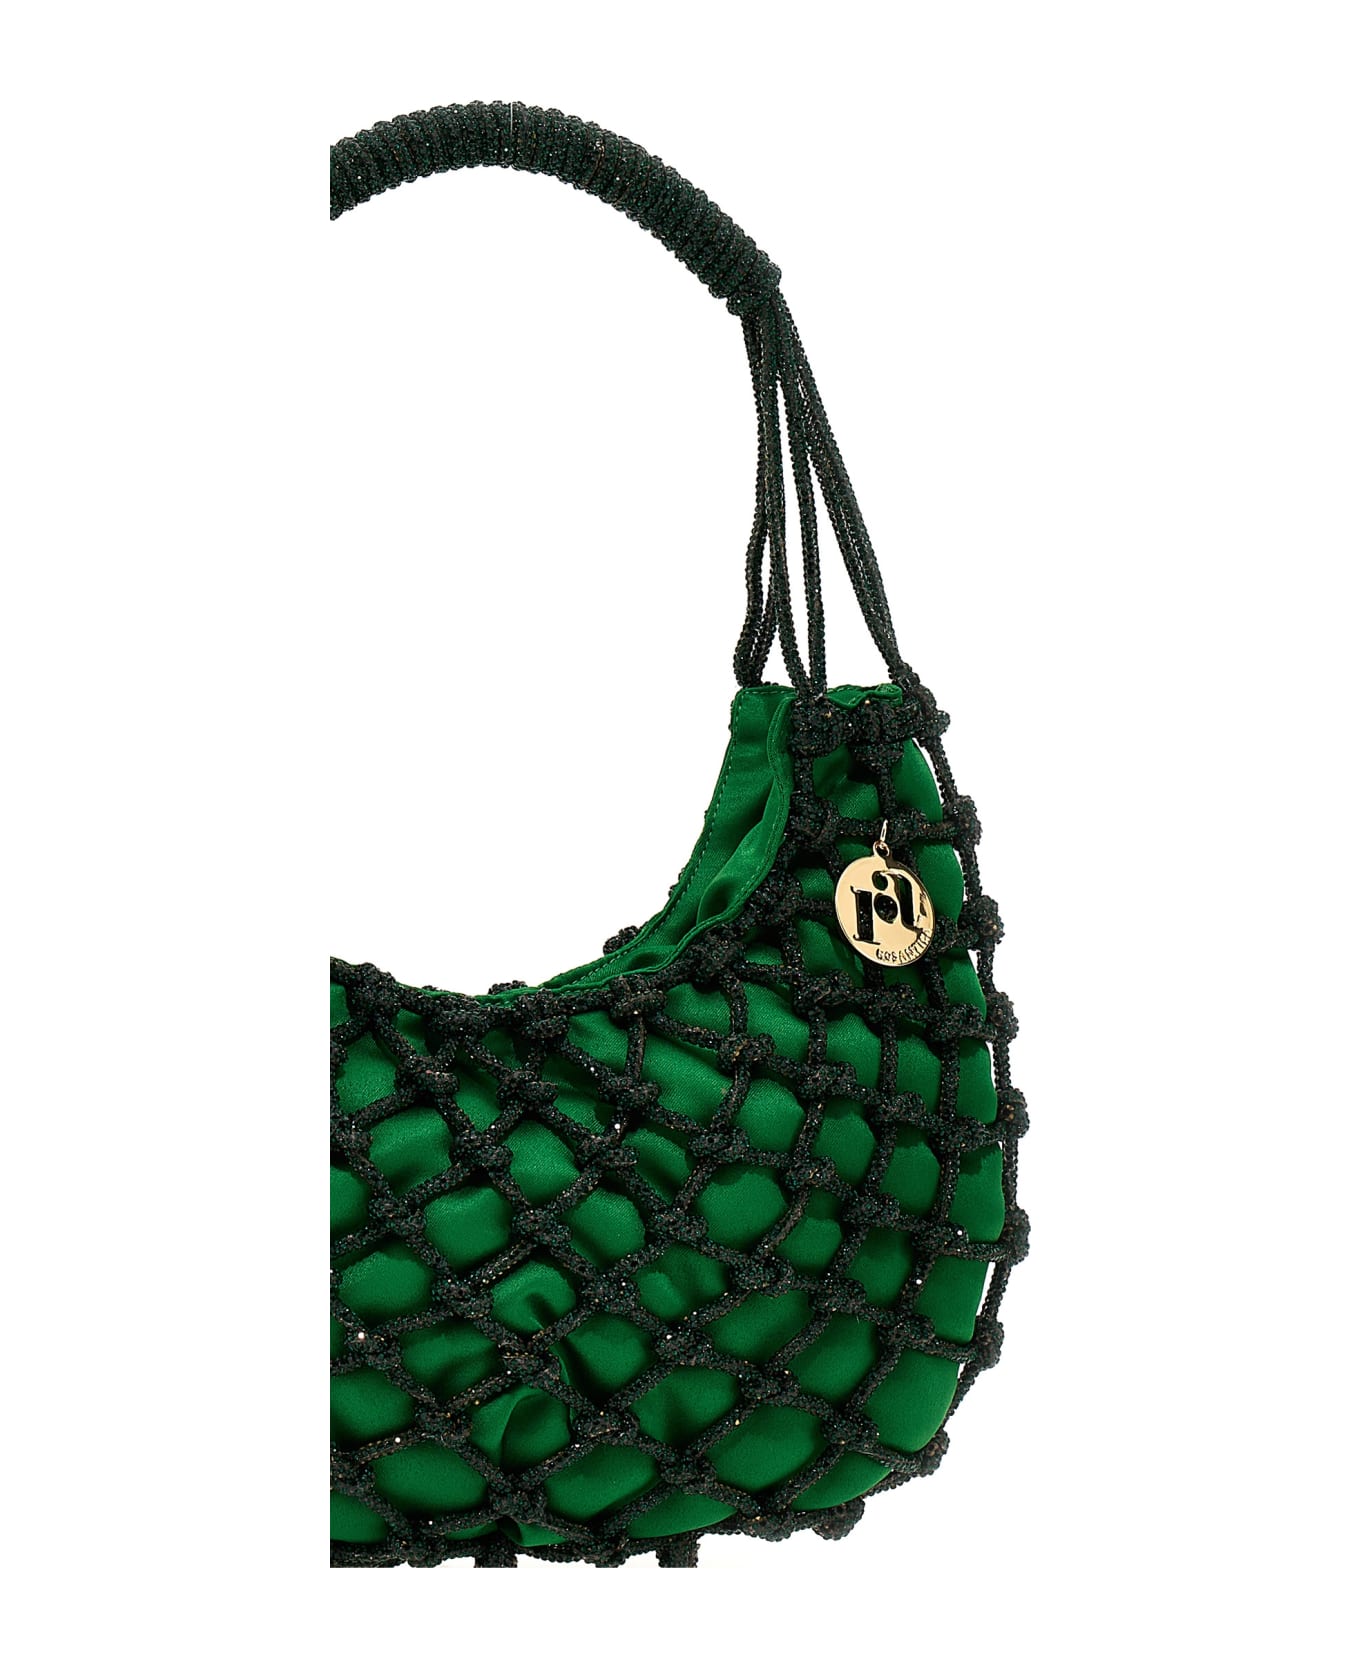 Rosantica 'nodi' Handbag - Green